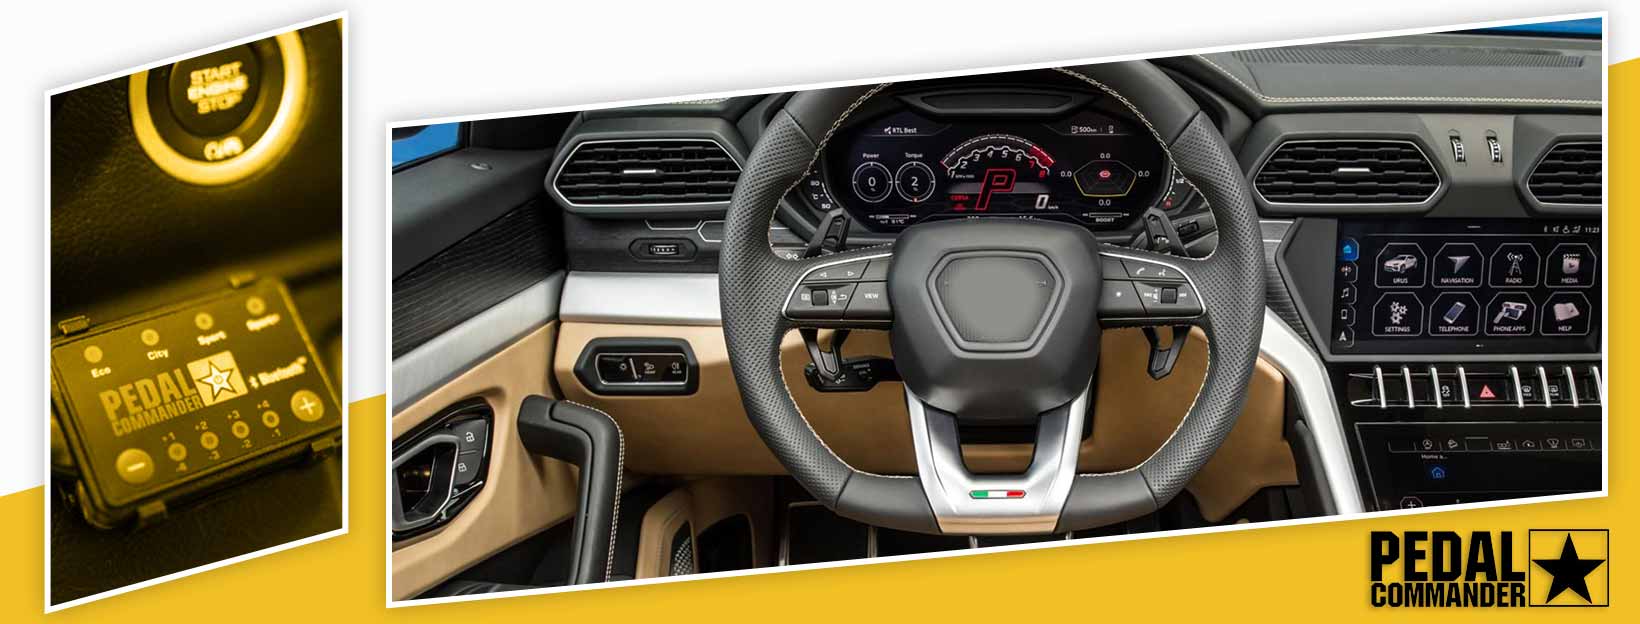 Pedal Commander for Lamborghini Urus - interior